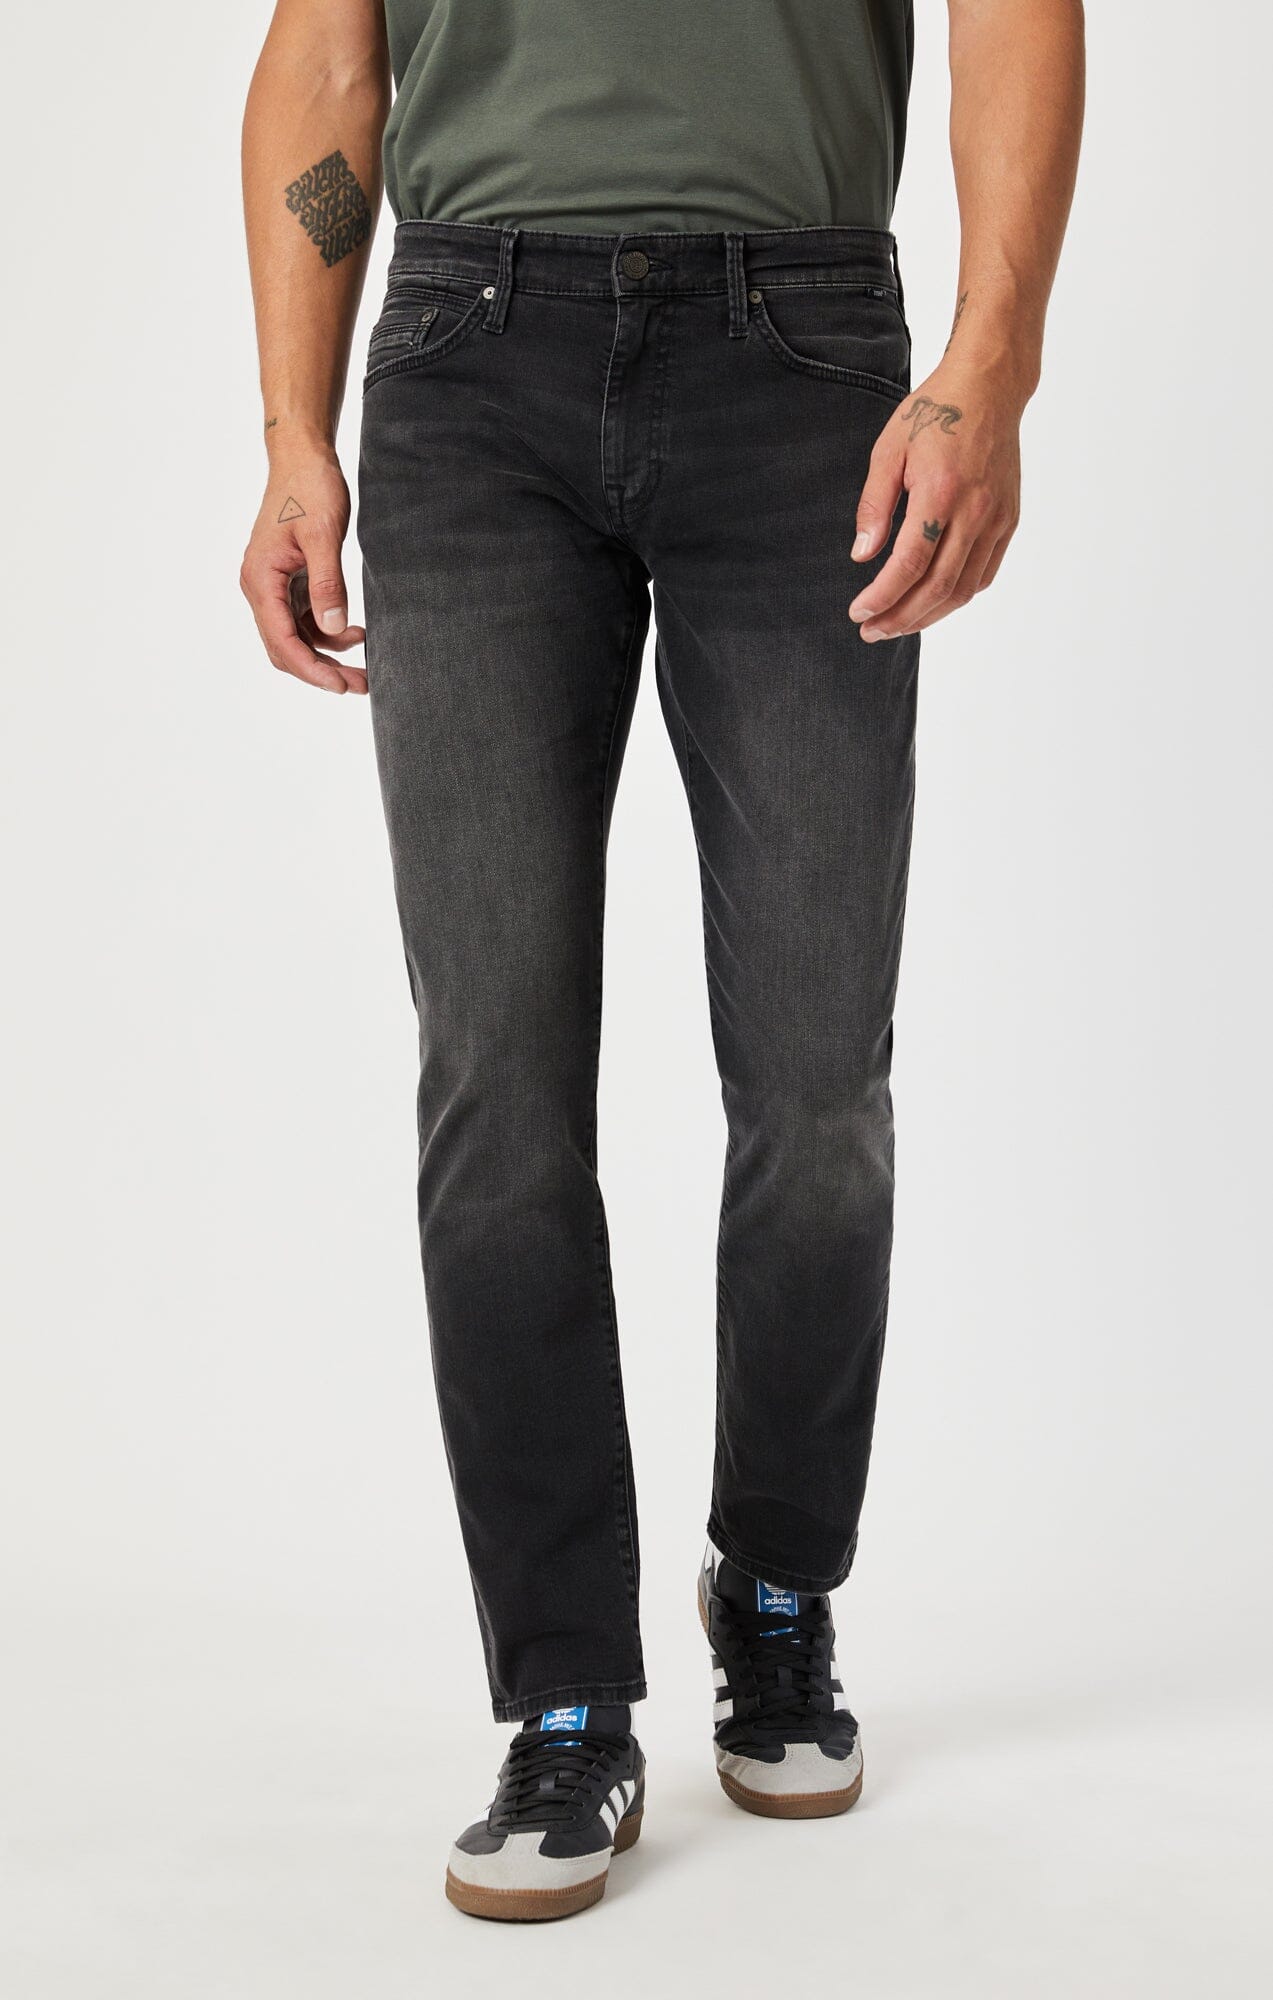 US | Jeans Mens Jeans Mavi | for Men Leg Slim Straight